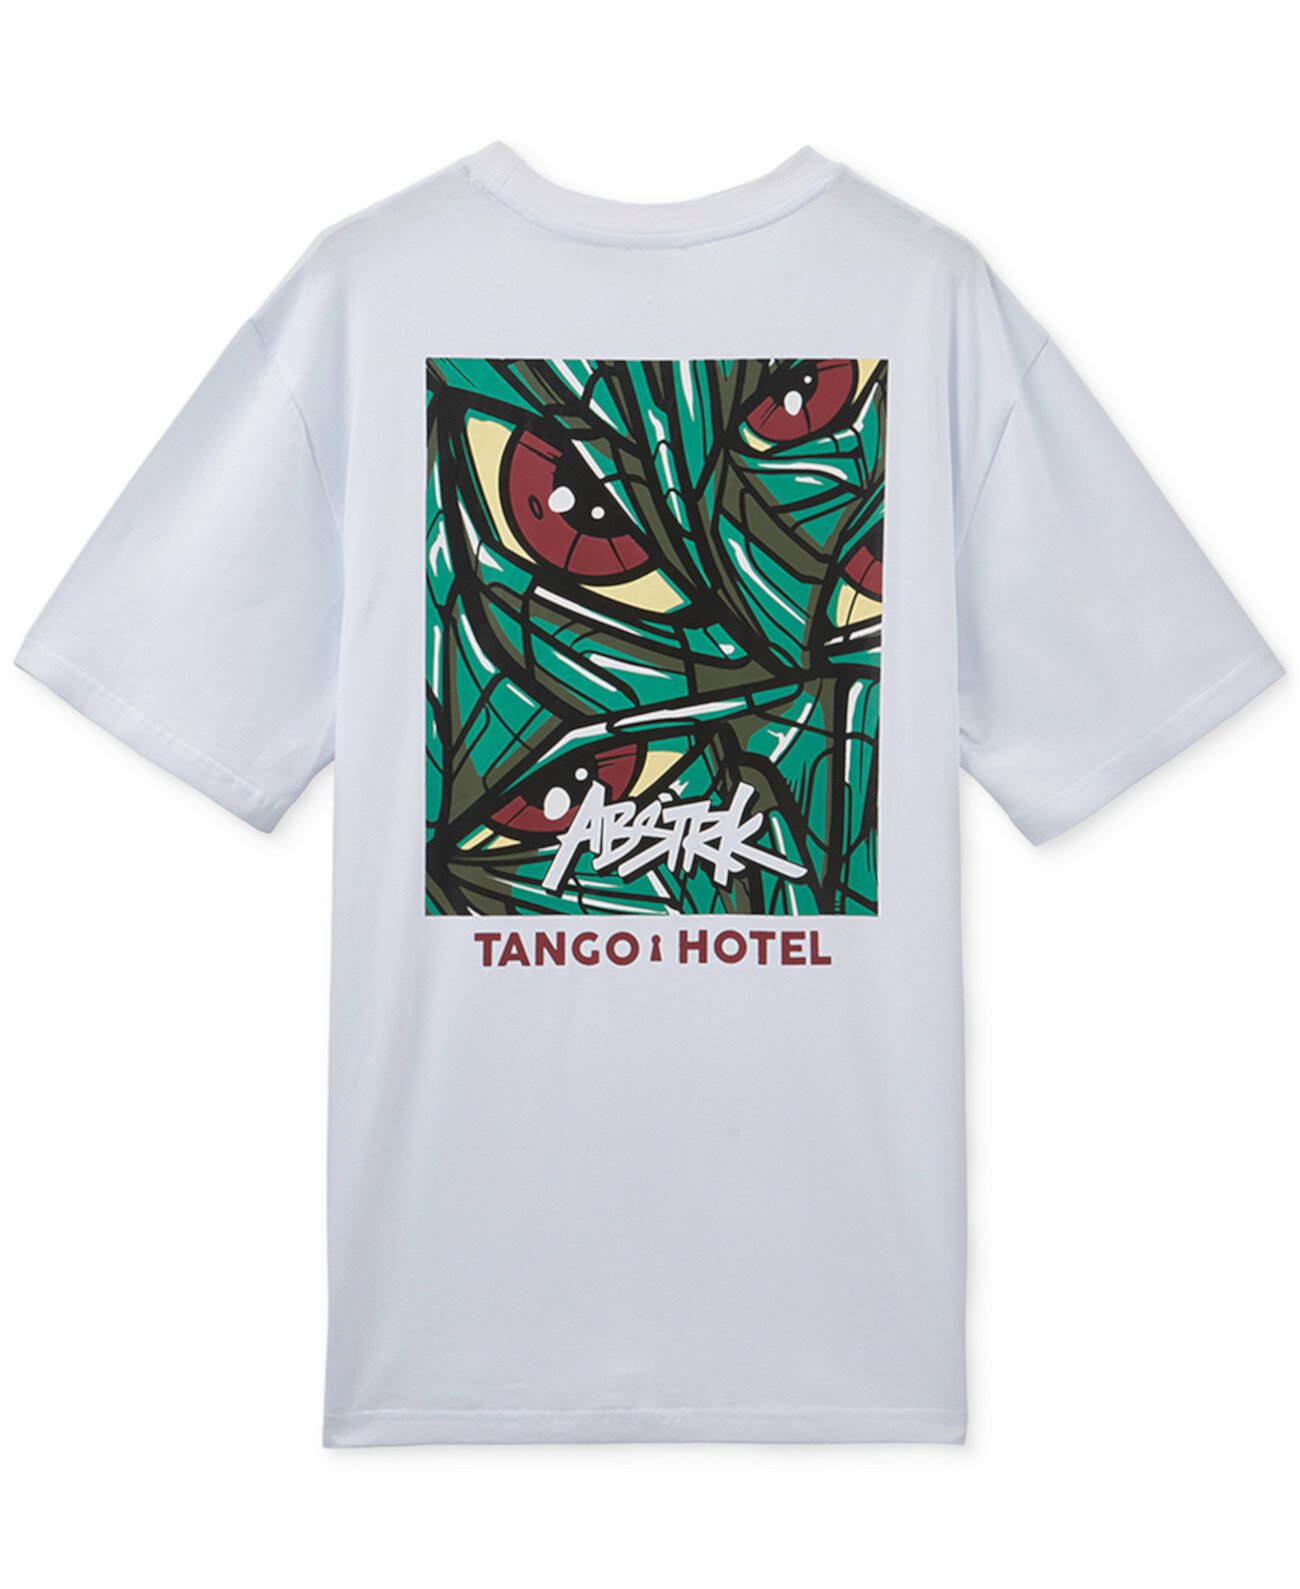 Мужская футболка с логотипом и графикой x Abstrk TANGO HOTEL